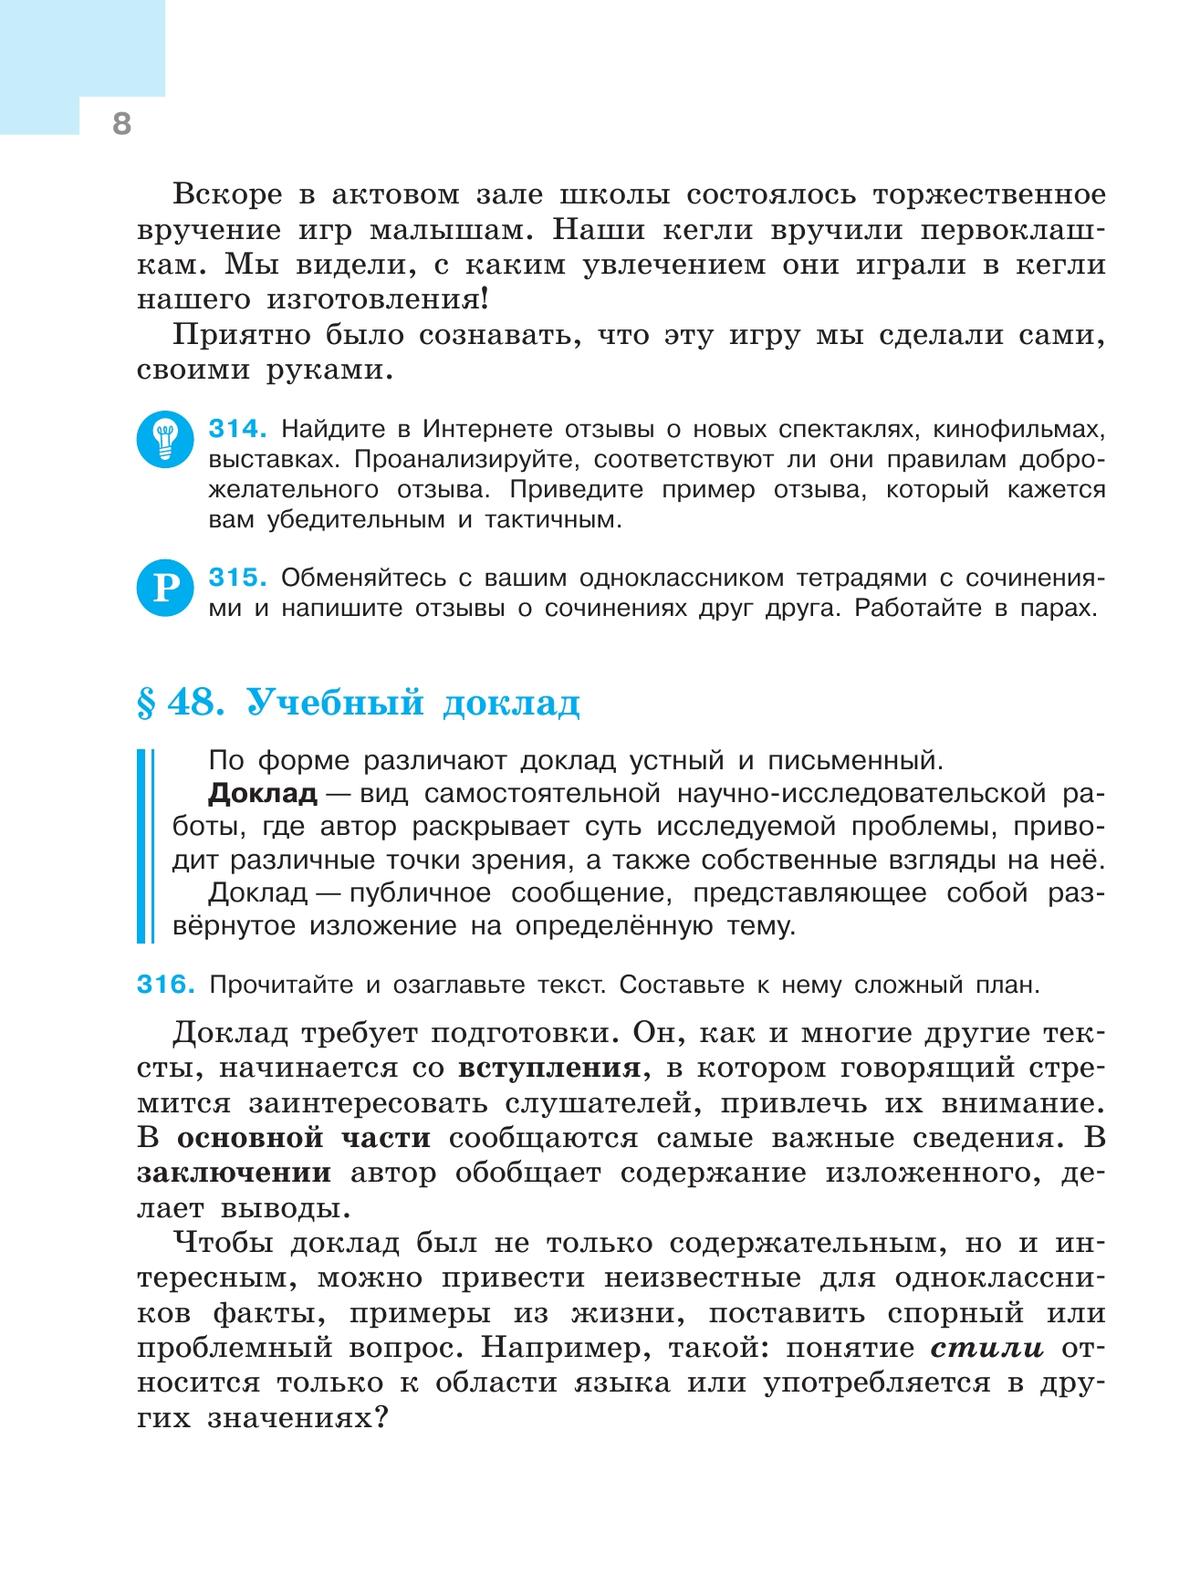 Русский язык. 7 класс. Учебник. В 2 ч. Часть 2 10